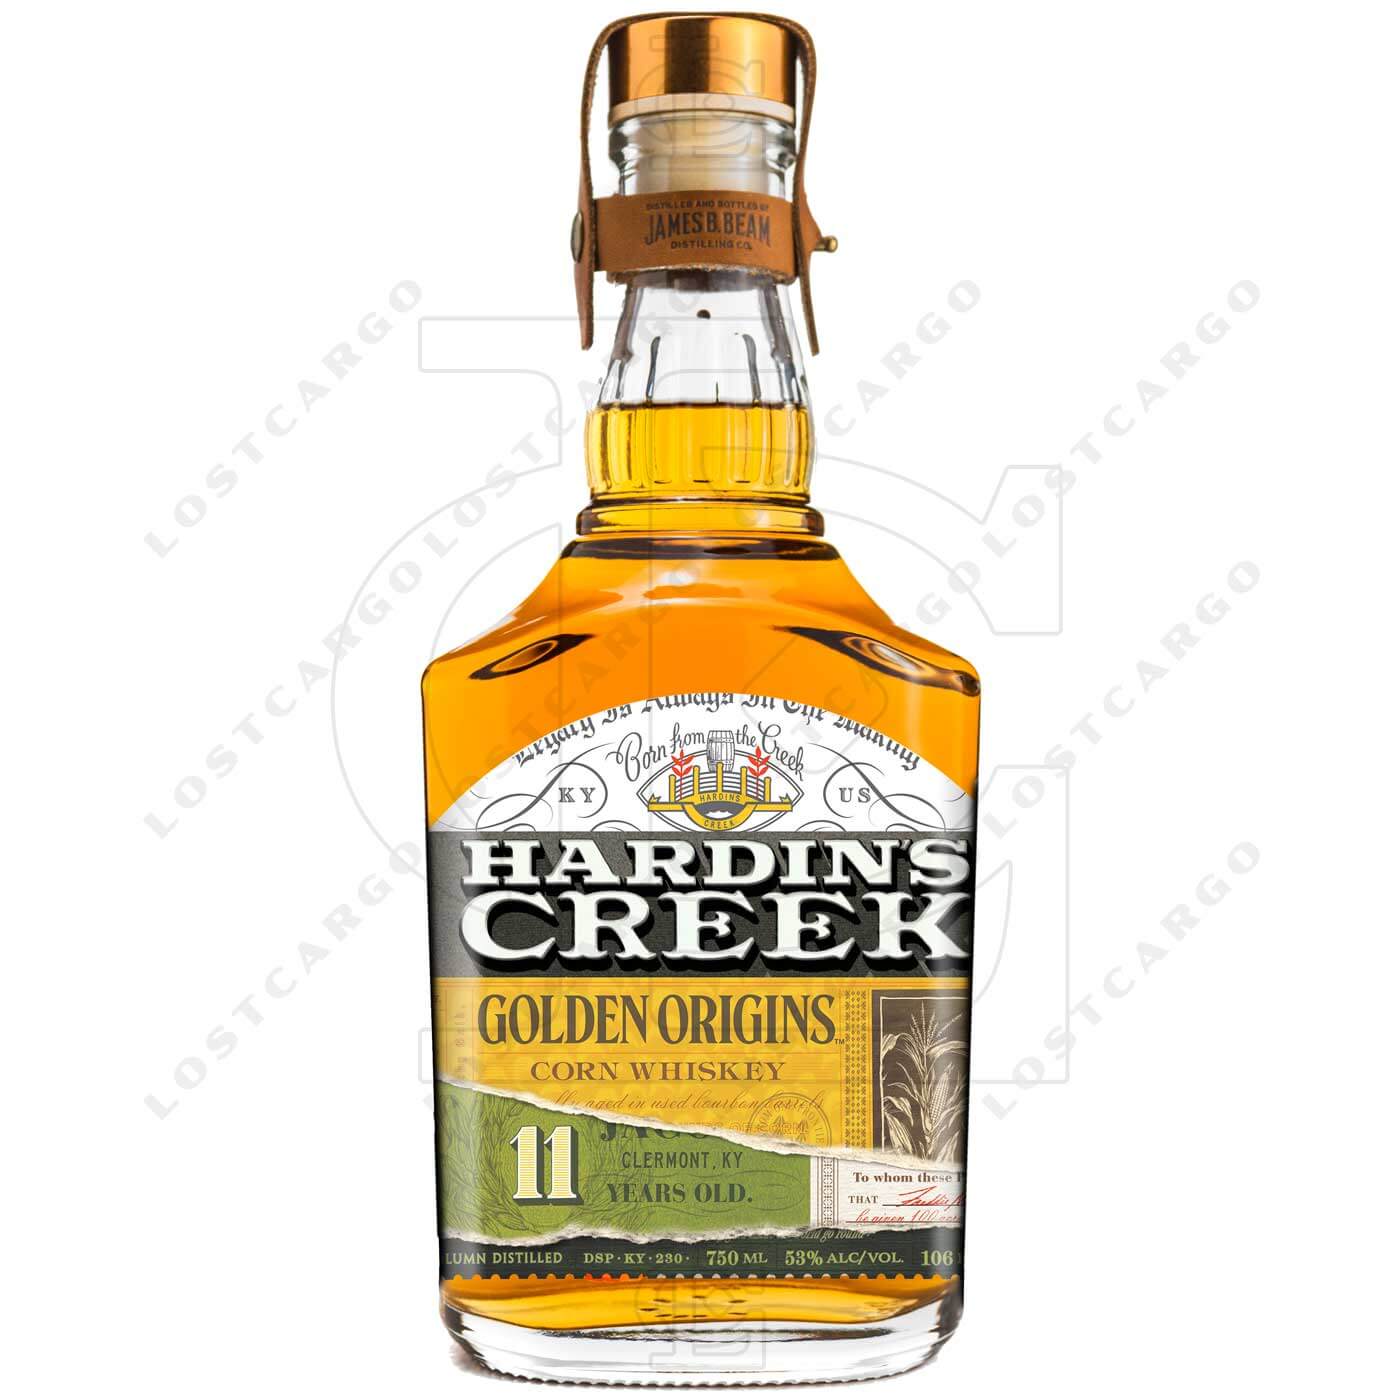 Hardin's Creek Golden Origins Corn Whiskey bottle